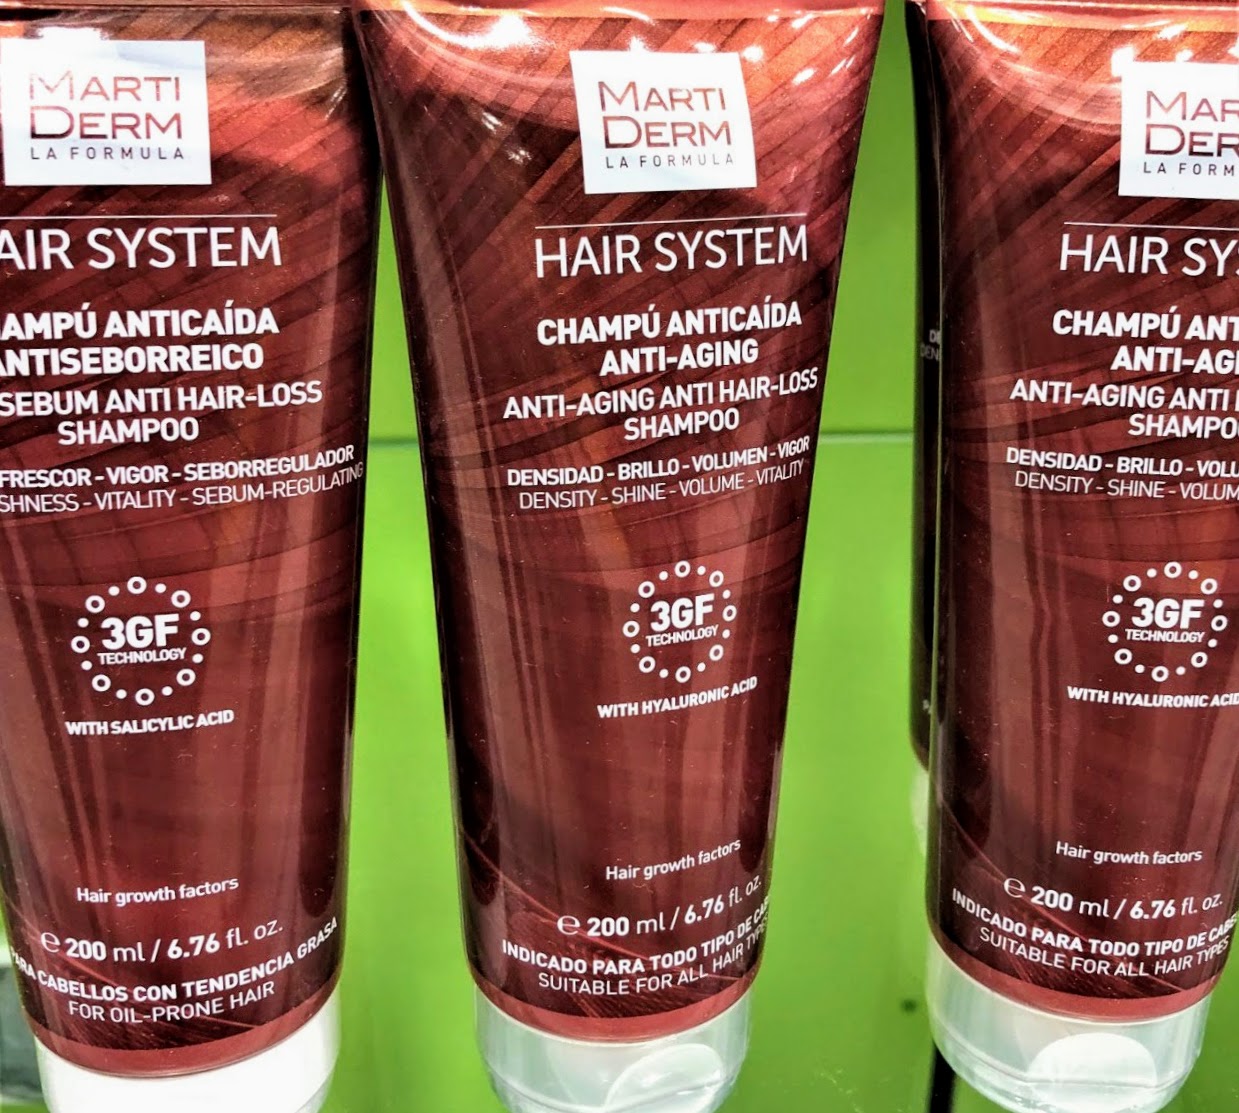 Hair System Champú Anti caída Antiaging - 200 ml USO Diario Combate el envejecimiento capilar y mejora el anclaje al cuero cabelludo. Aporta densidad, brillo, volumen y vigor.